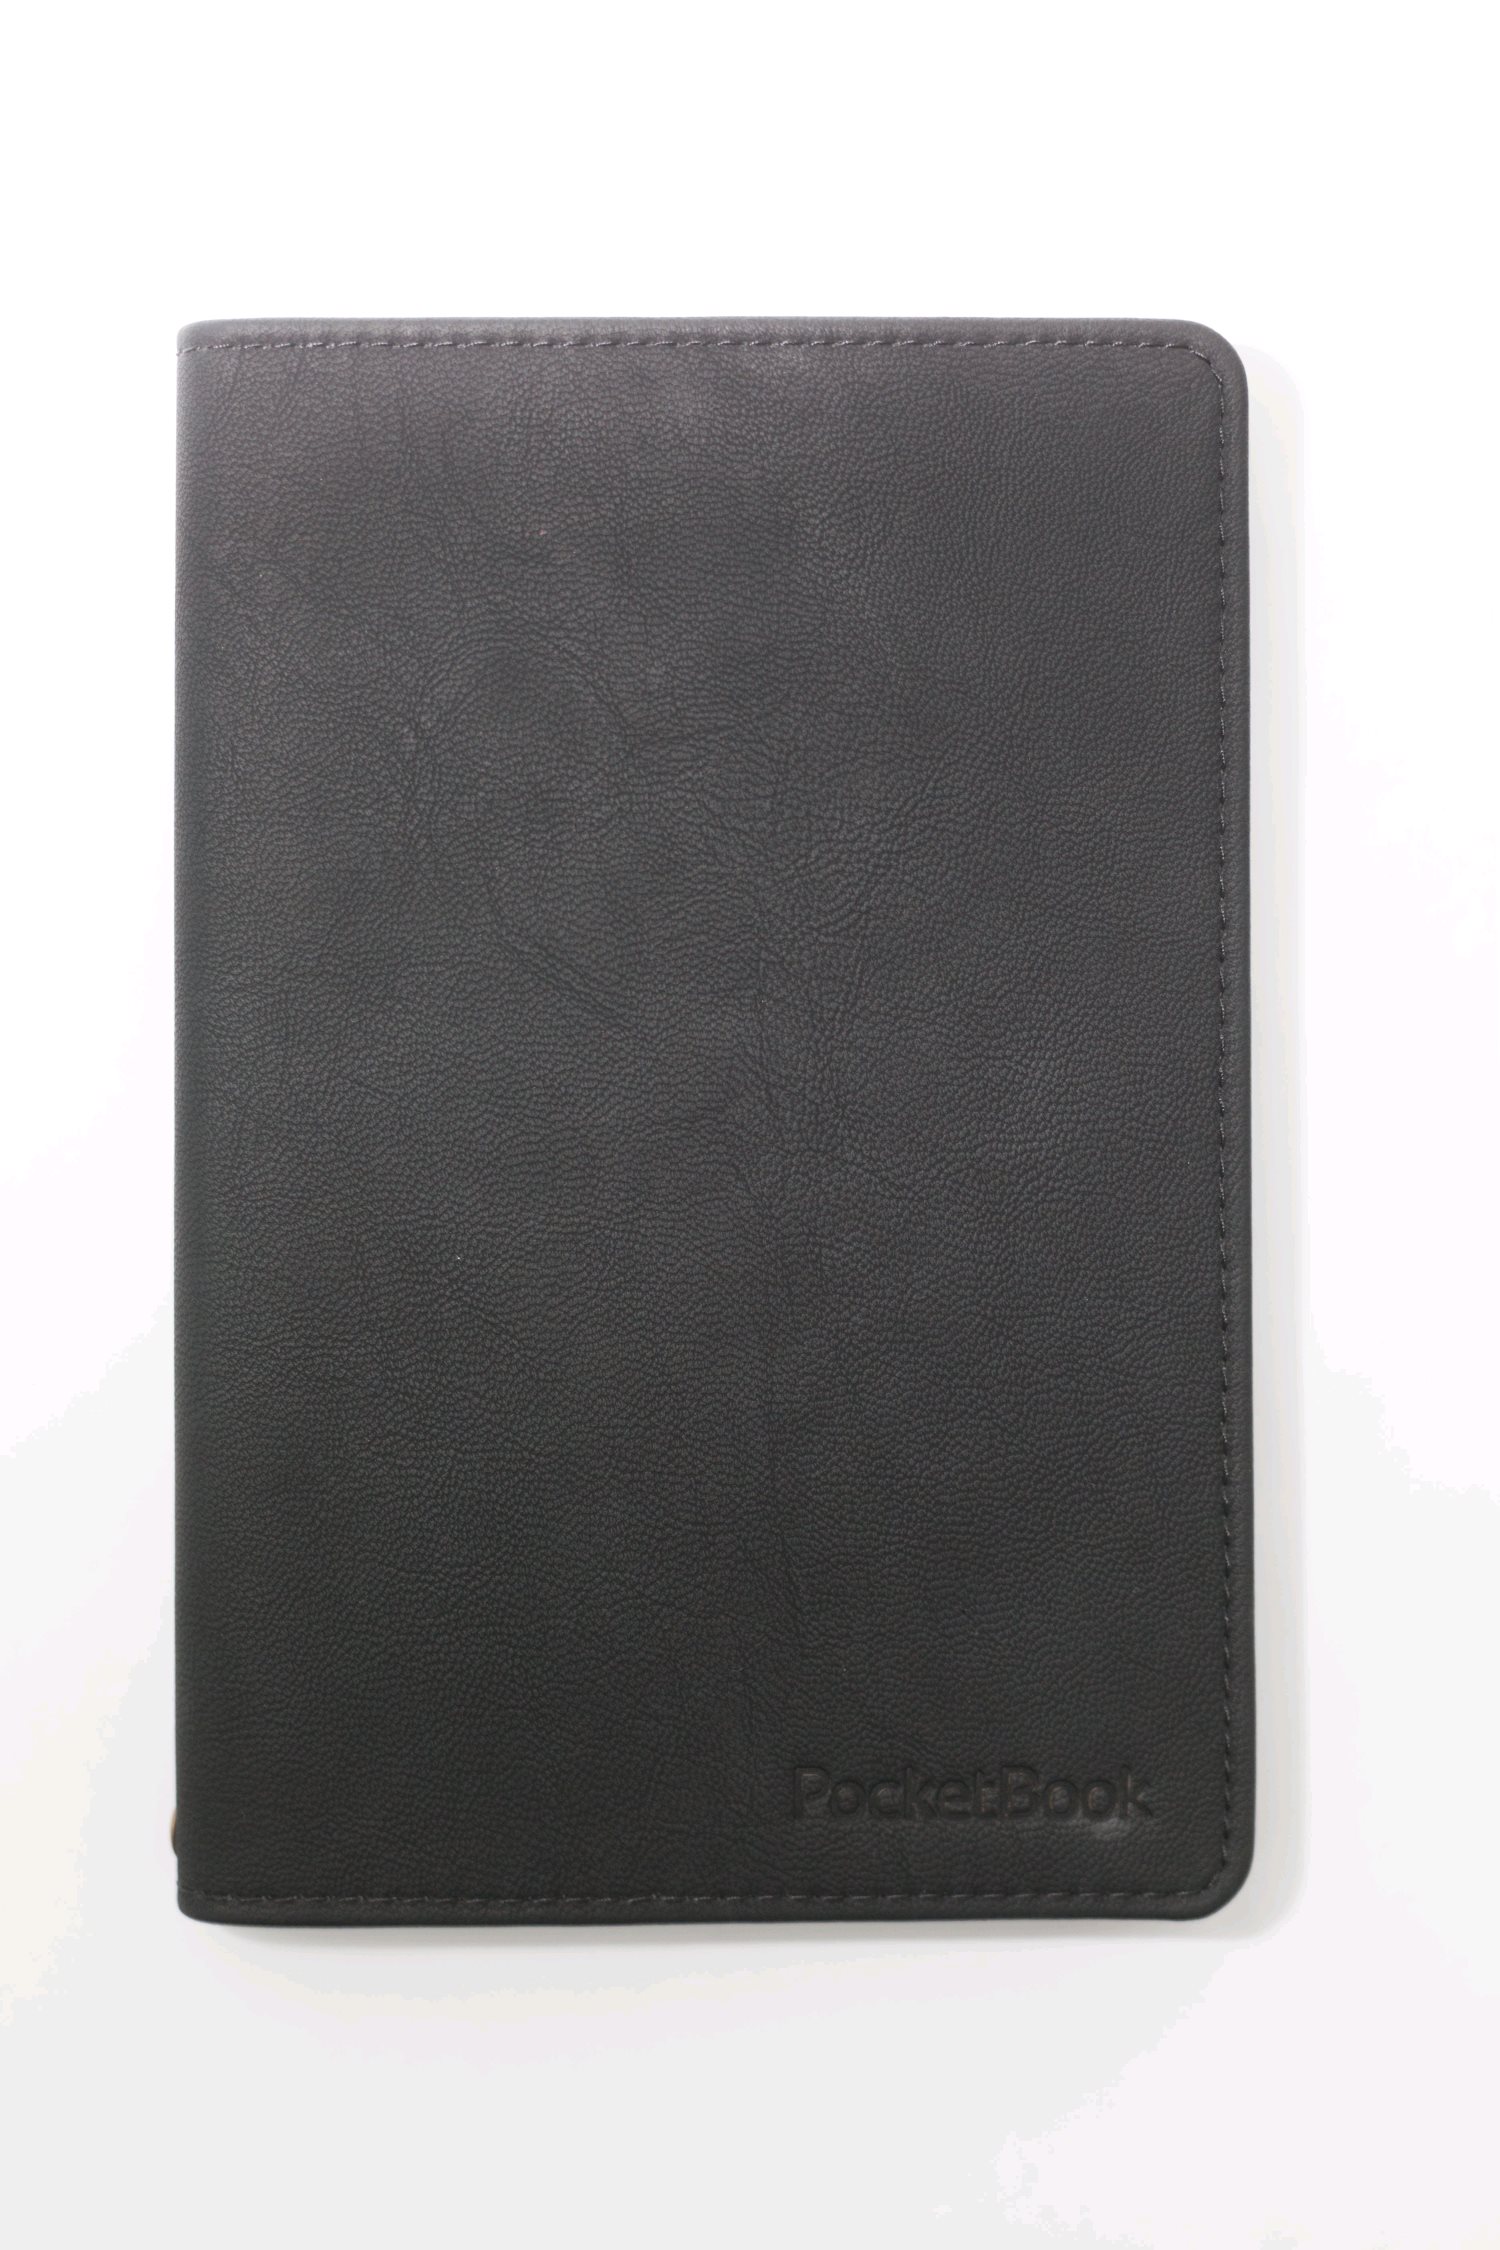 Pocketbook pouzdro pro 616 a 627, černé WPUC-616-S-BK